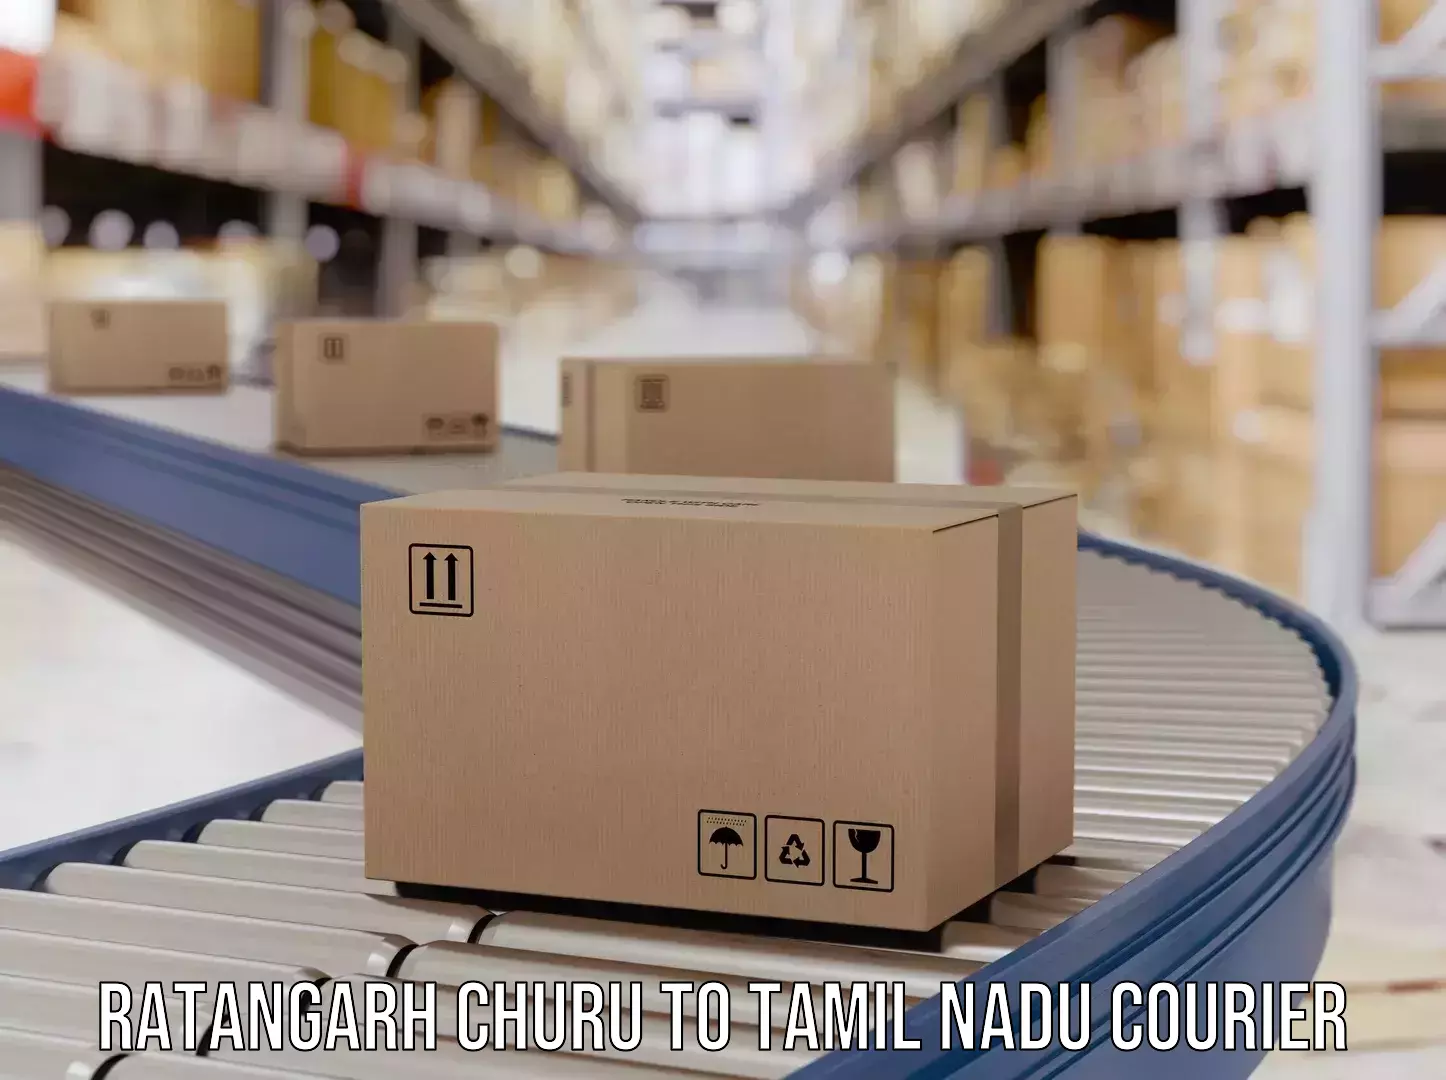 Custom courier packaging in Ratangarh Churu to Denkanikottai